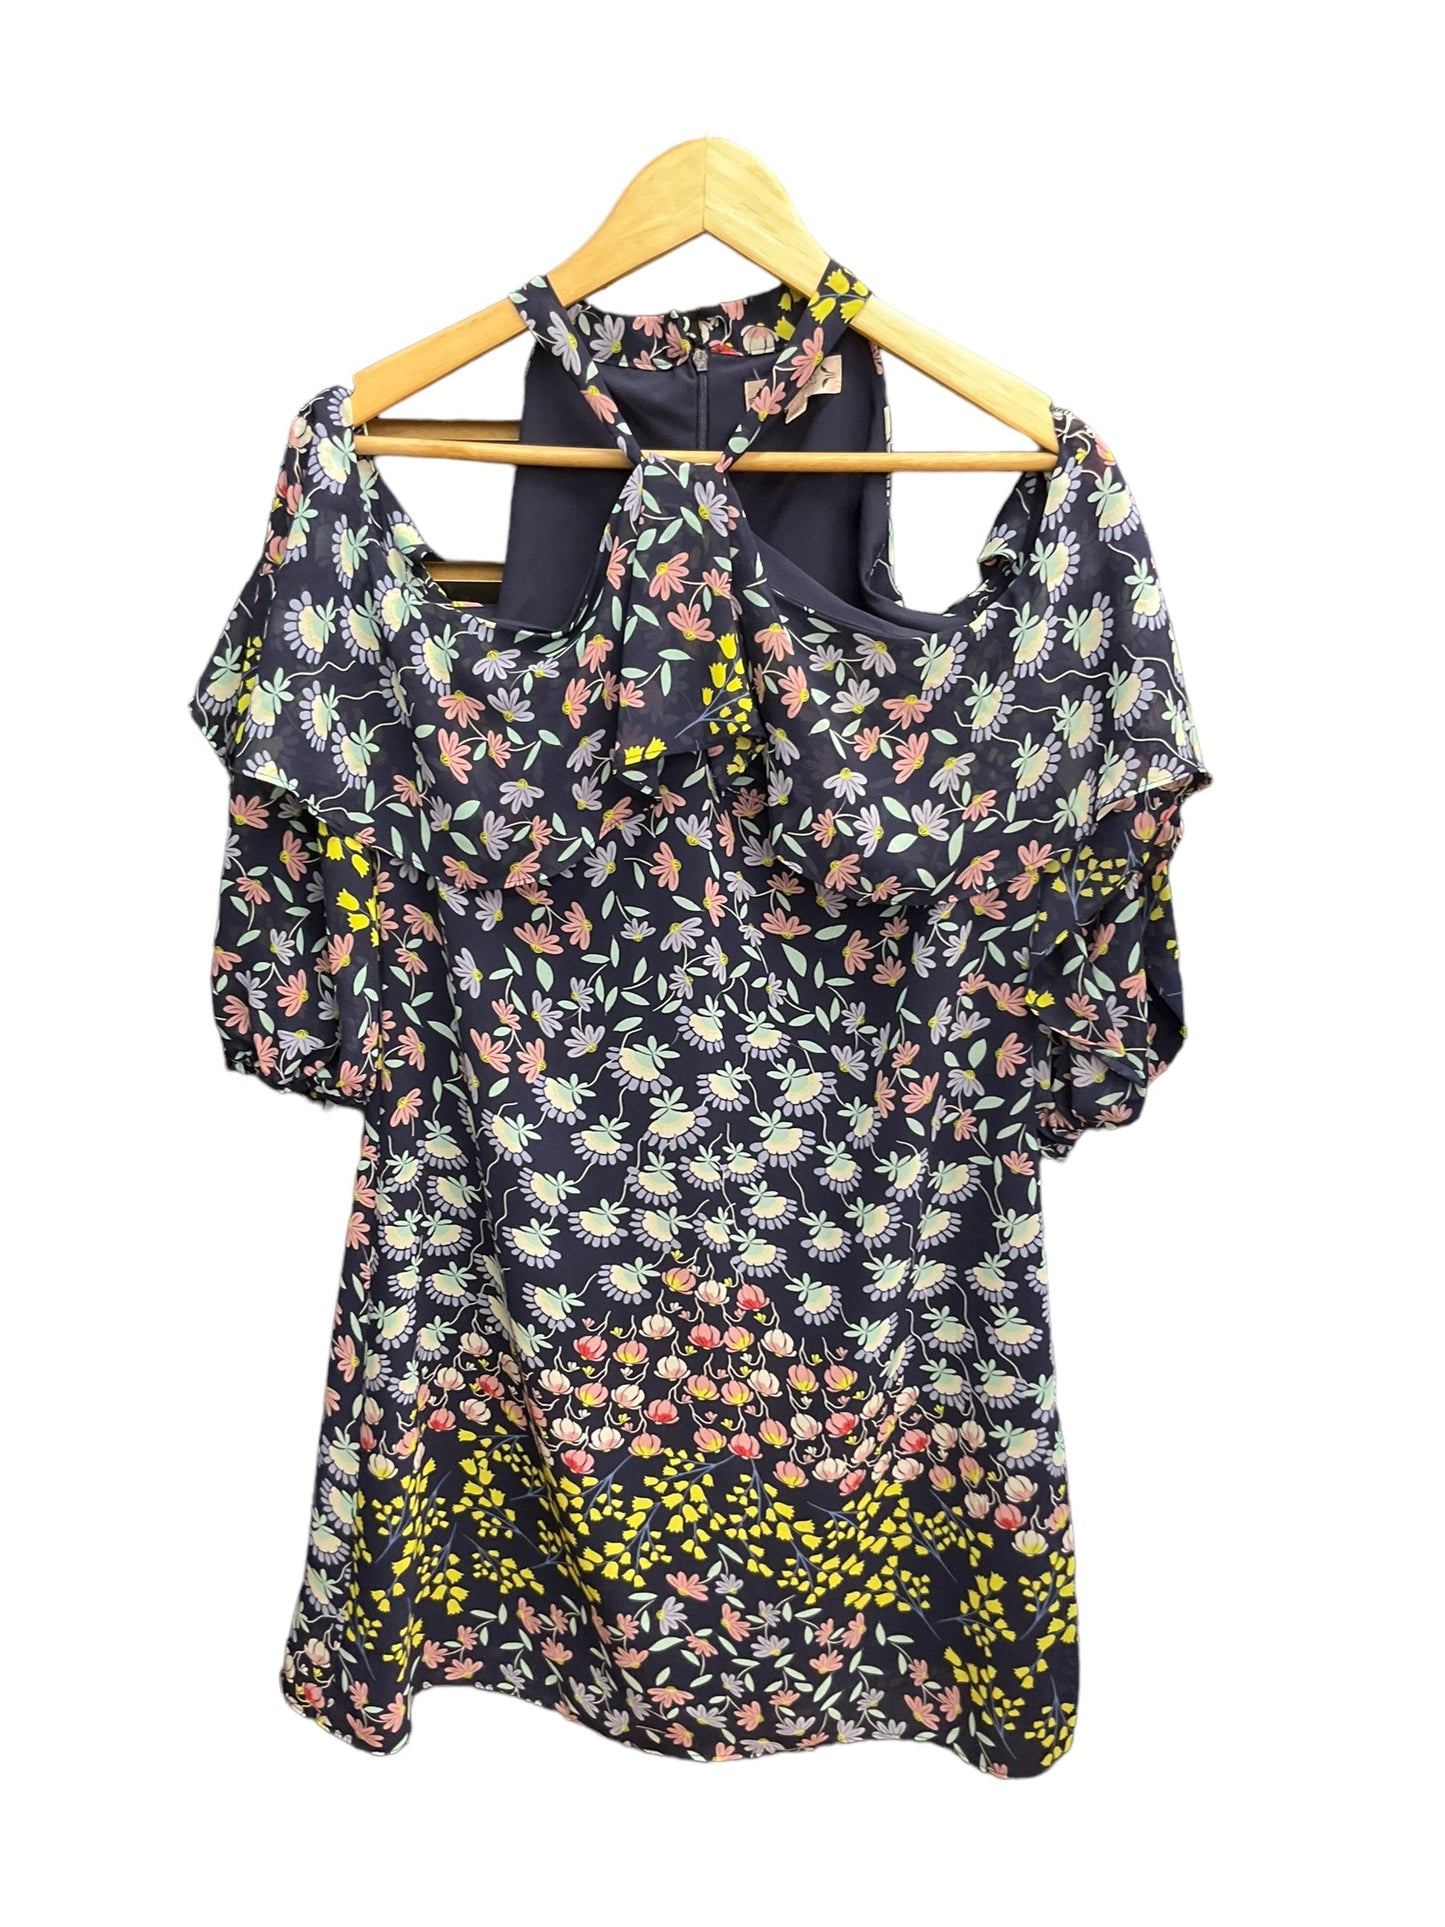 Floral Print Dress Casual Short Nanette Lepore, Size M